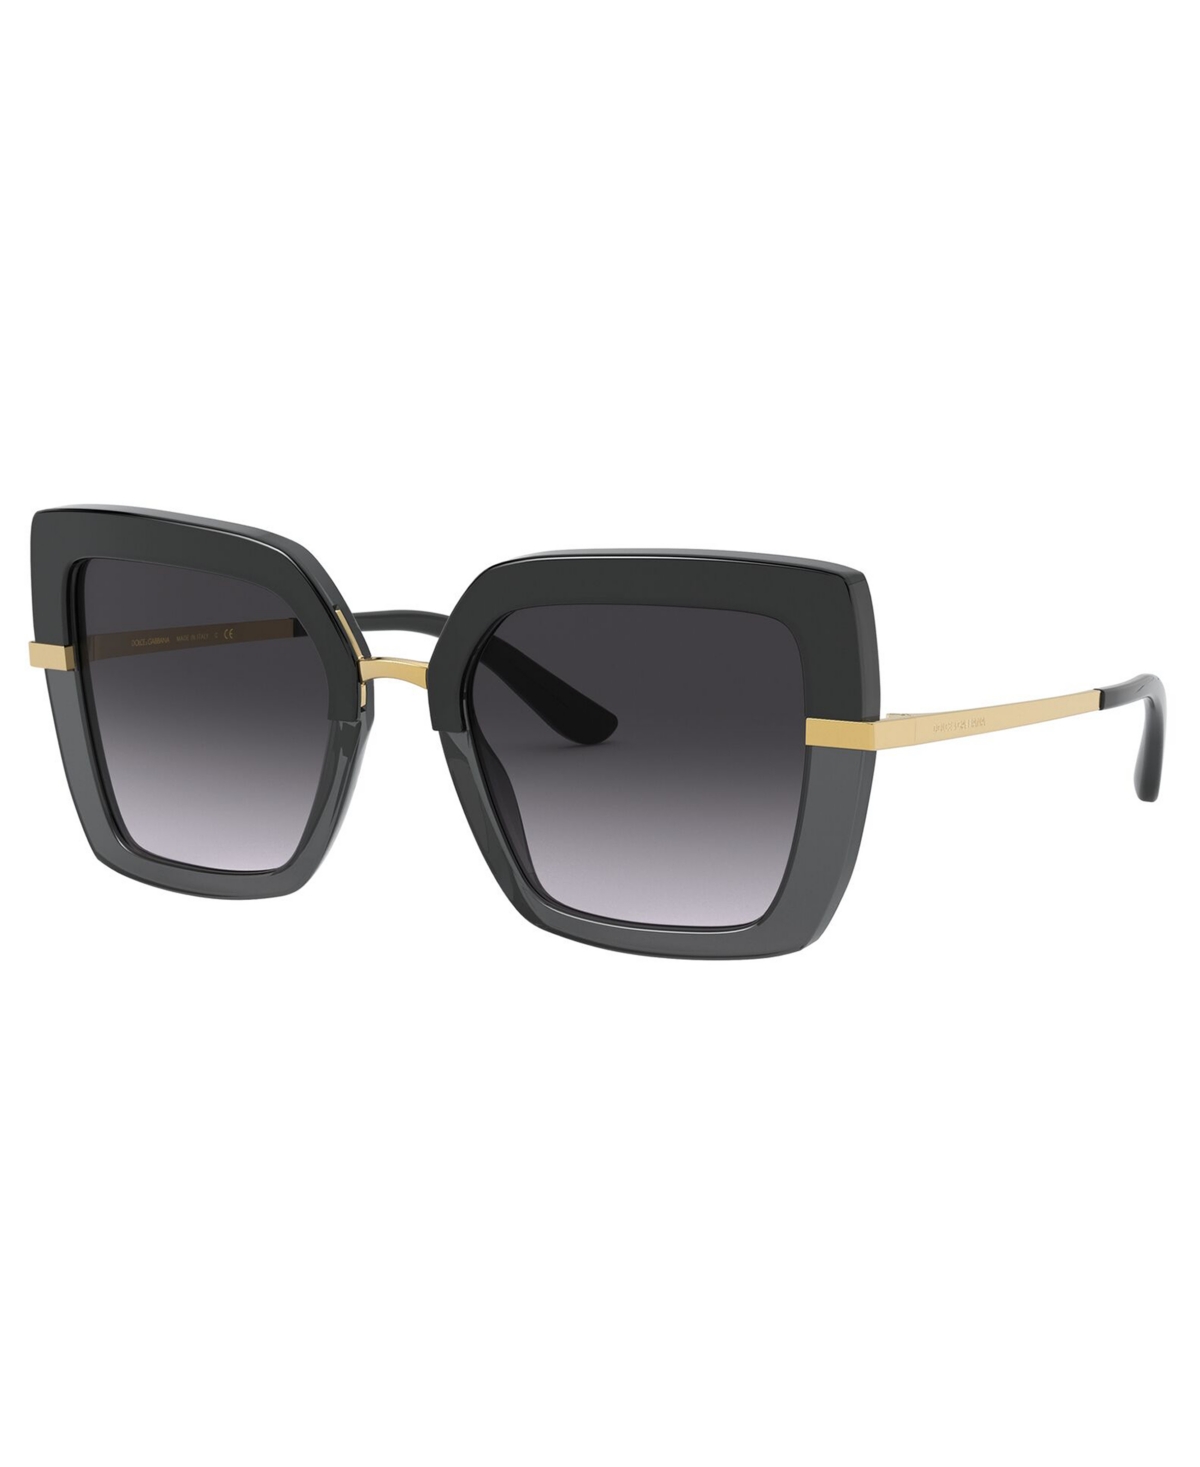 Dolce&Gabbana Women's Sunglasses, DG4373 - TOP HAVANA ON TRANSP BROWN/BROWN GRADIEN